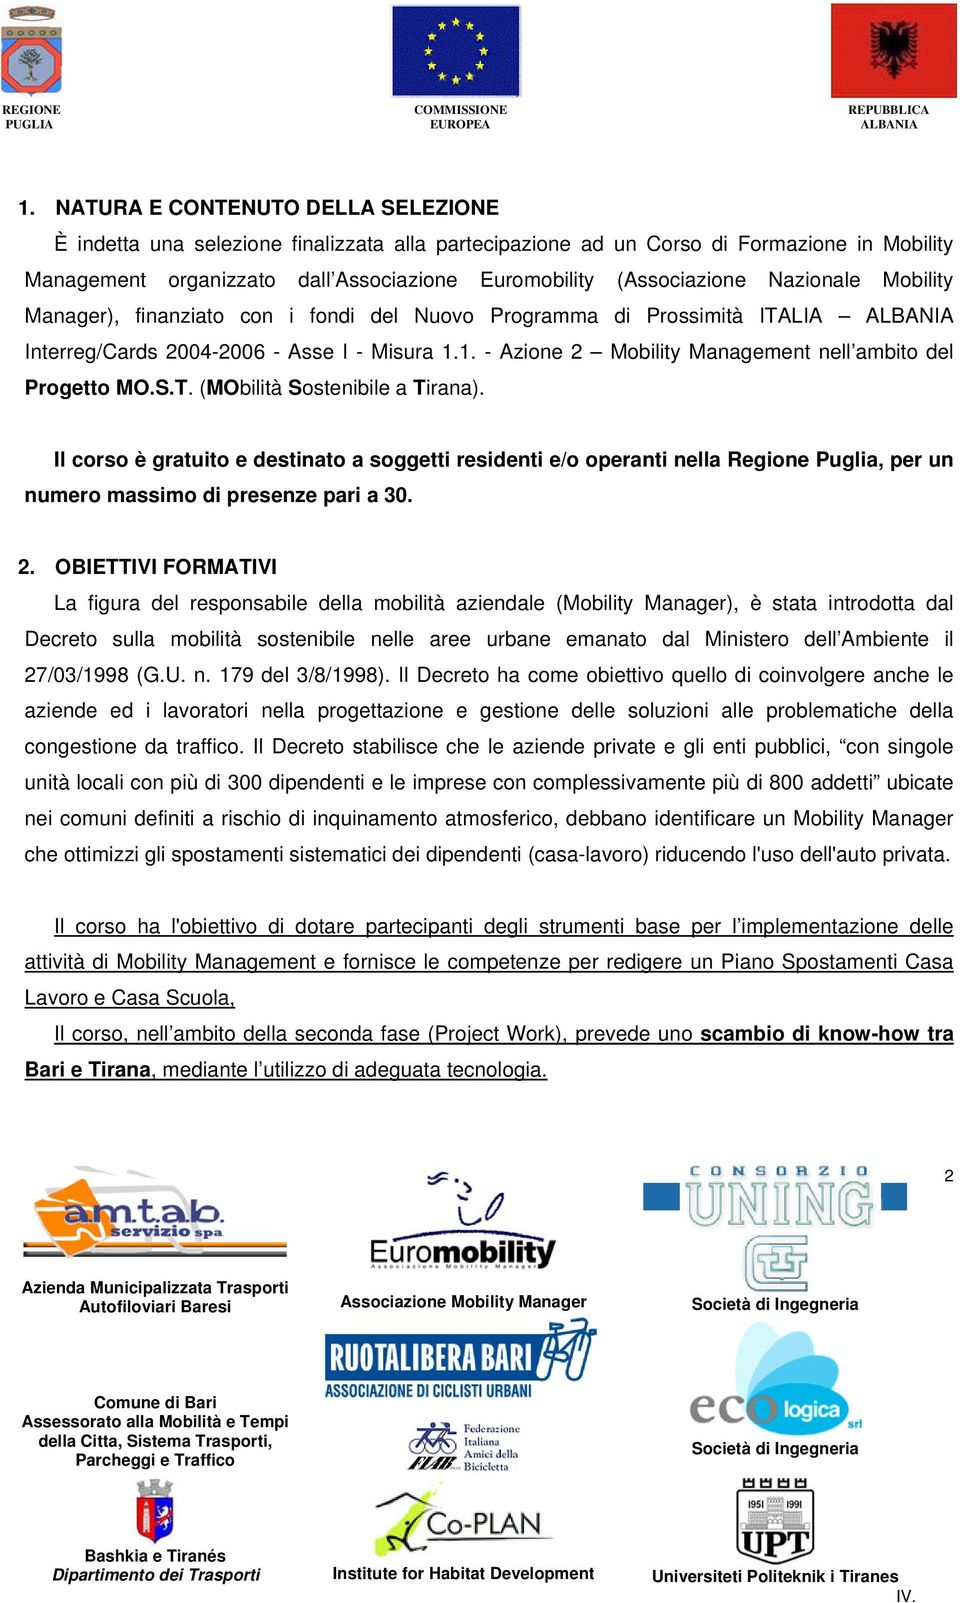 1. - Azione 2 Mobility Management nell ambito del Progetto MO.S.T. (MObilità Sostenibile a Tirana).